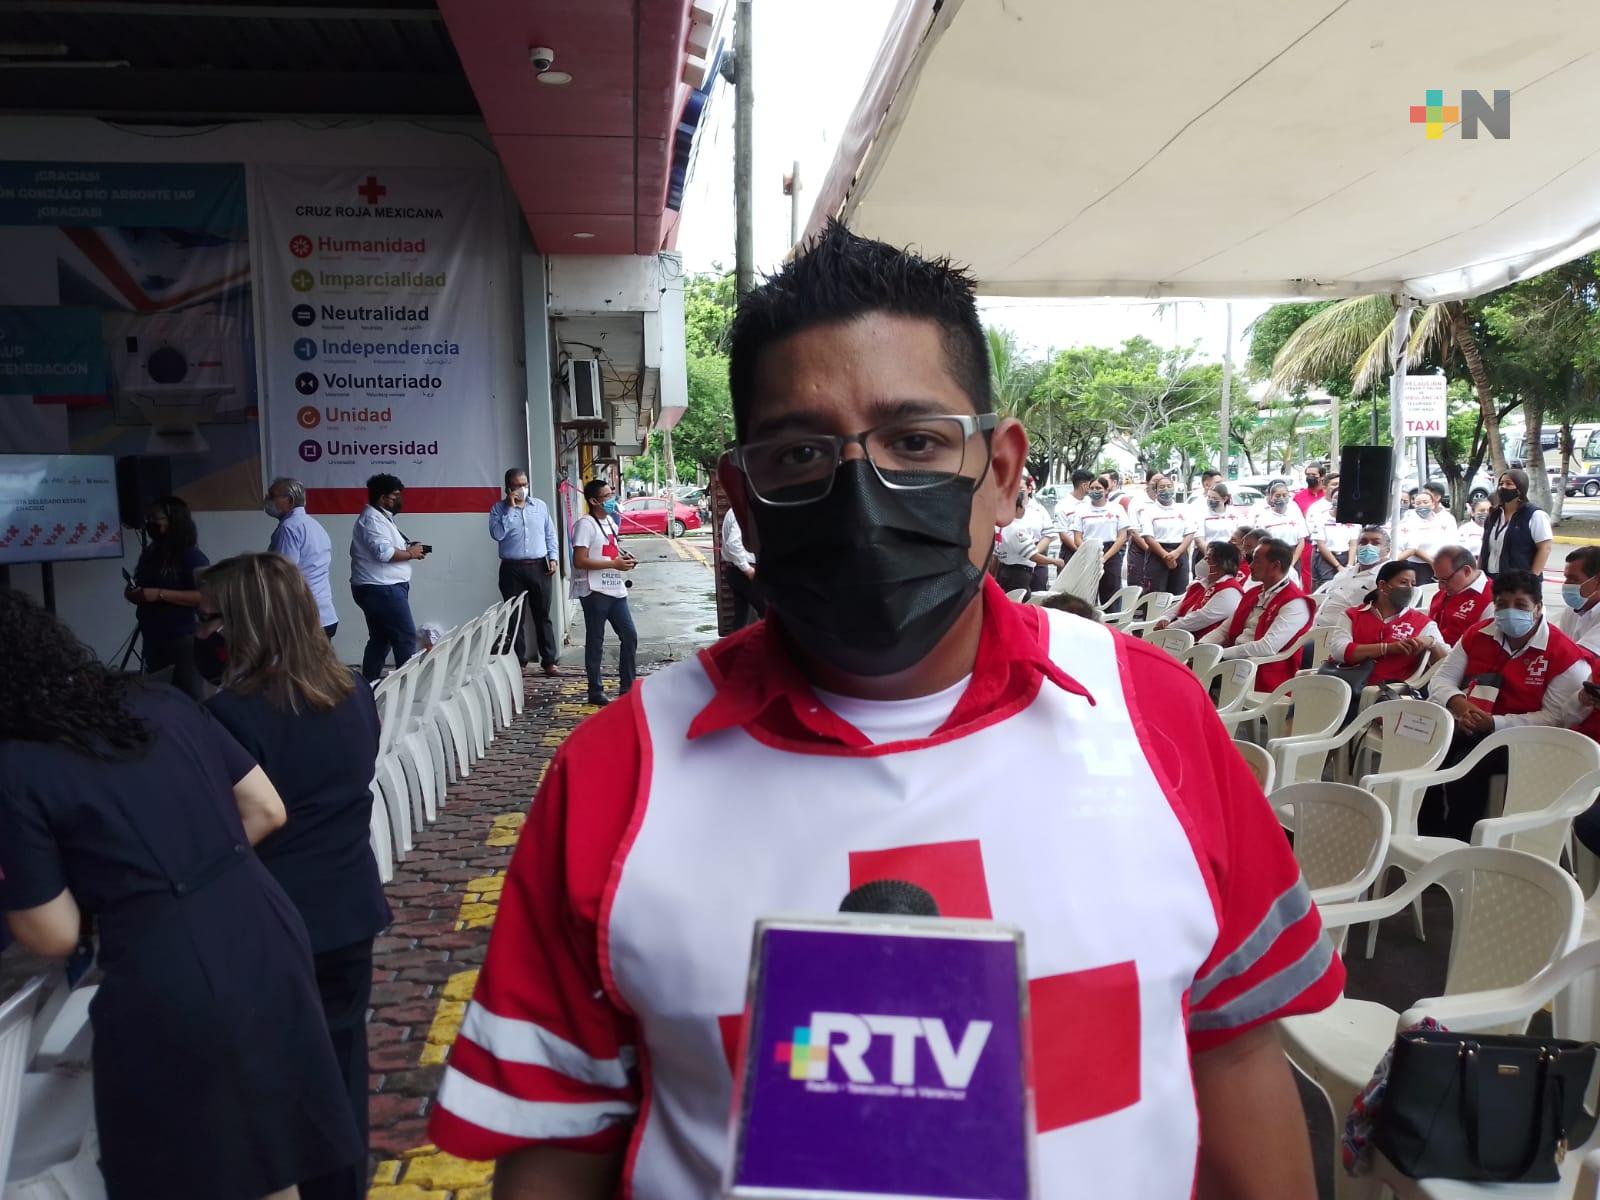 Accidentes más comunes en eventos masivos son vehiculares por alcohol y riñas: Cruz Roja Veracruz